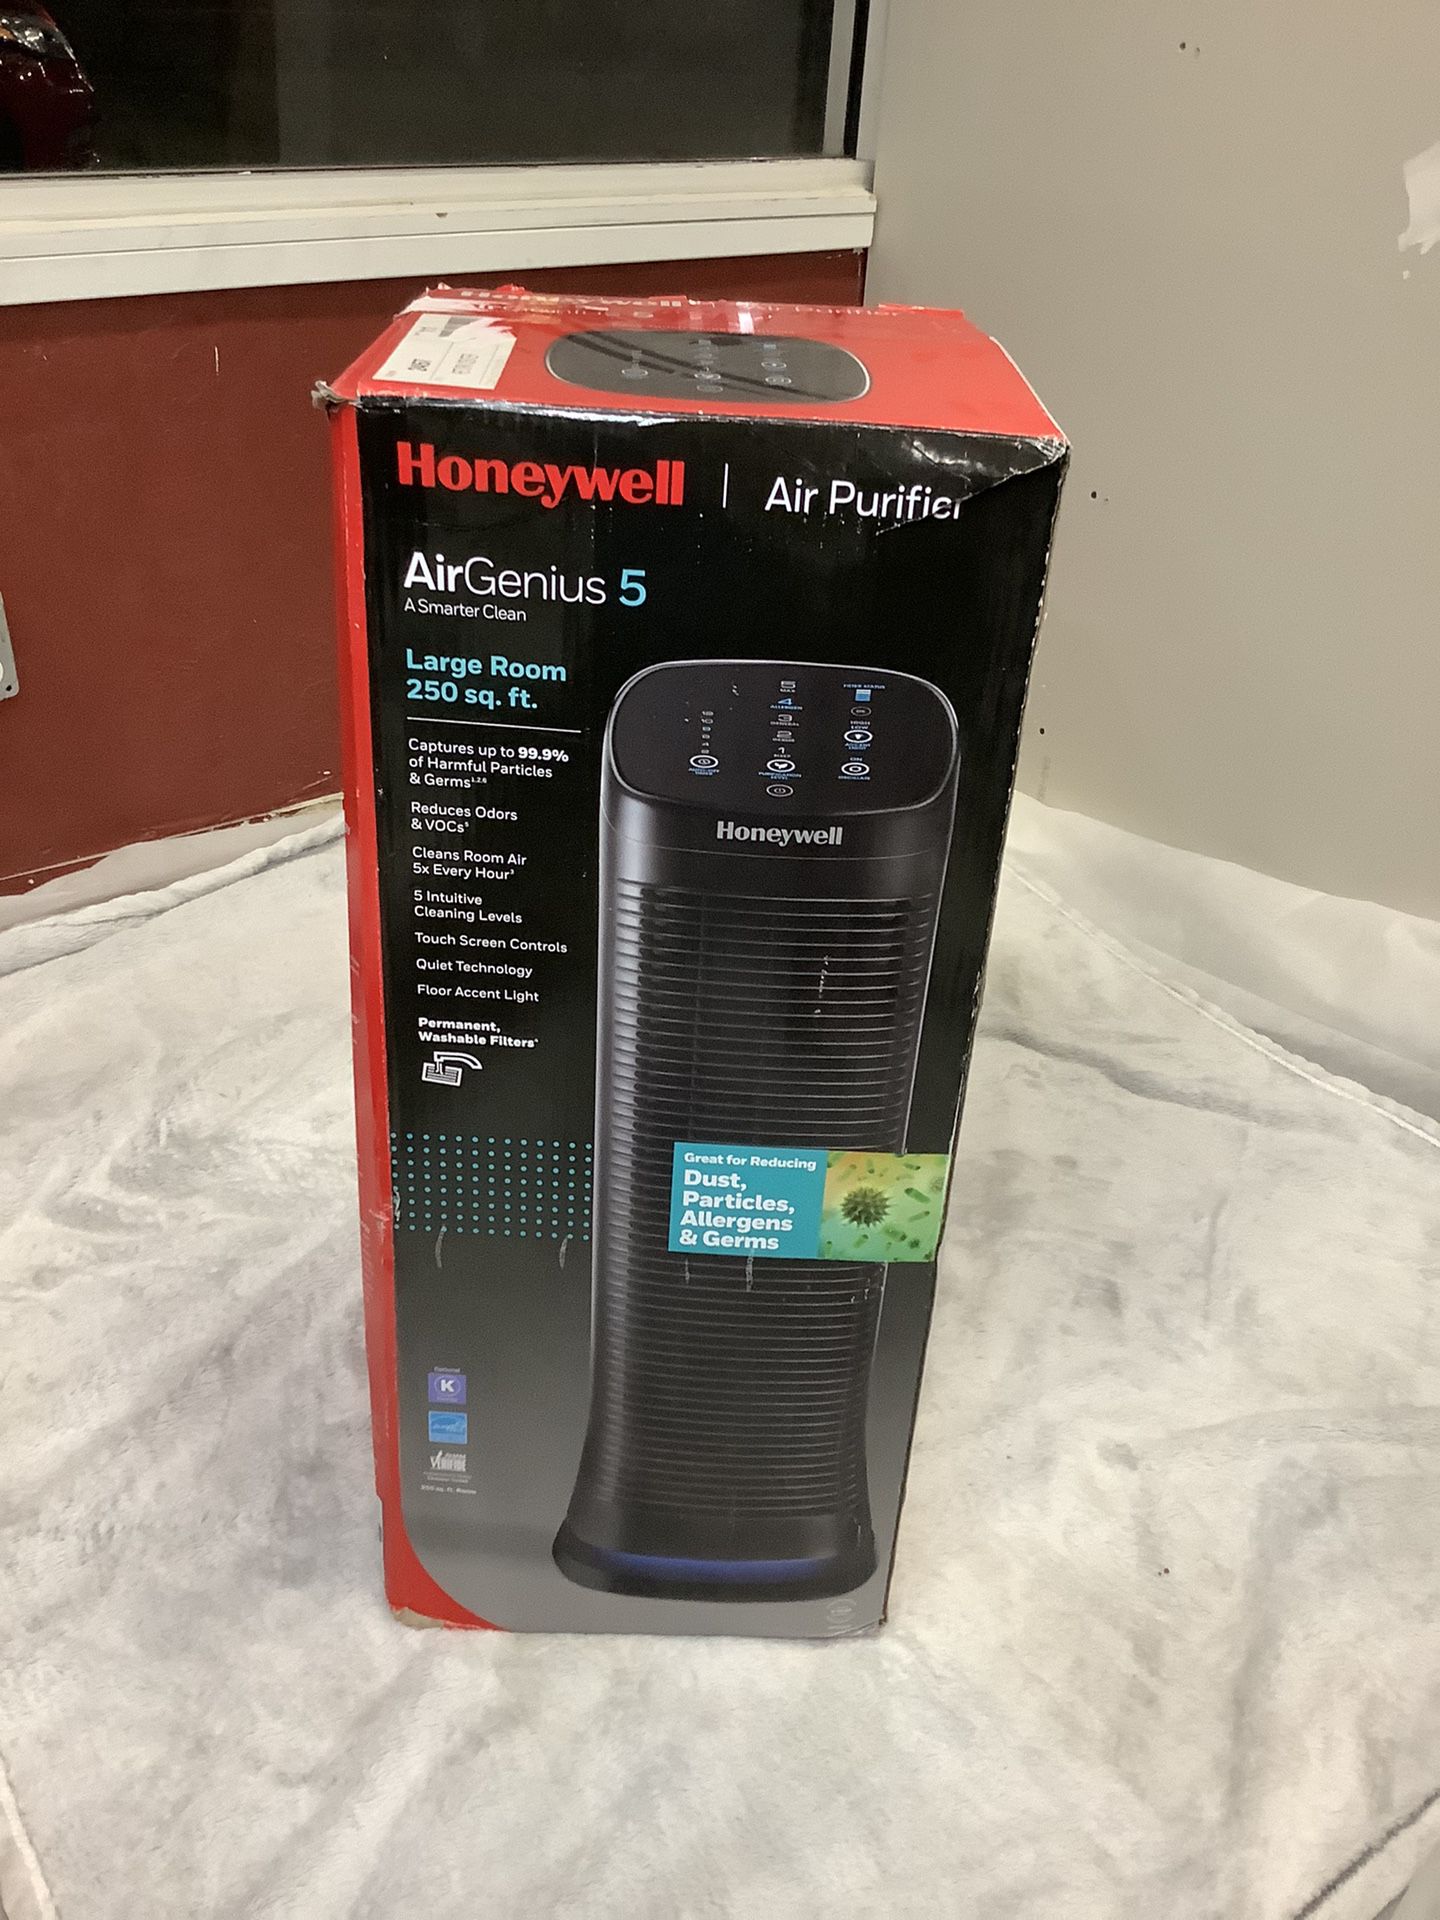 Honeywell Air purifier, air genius